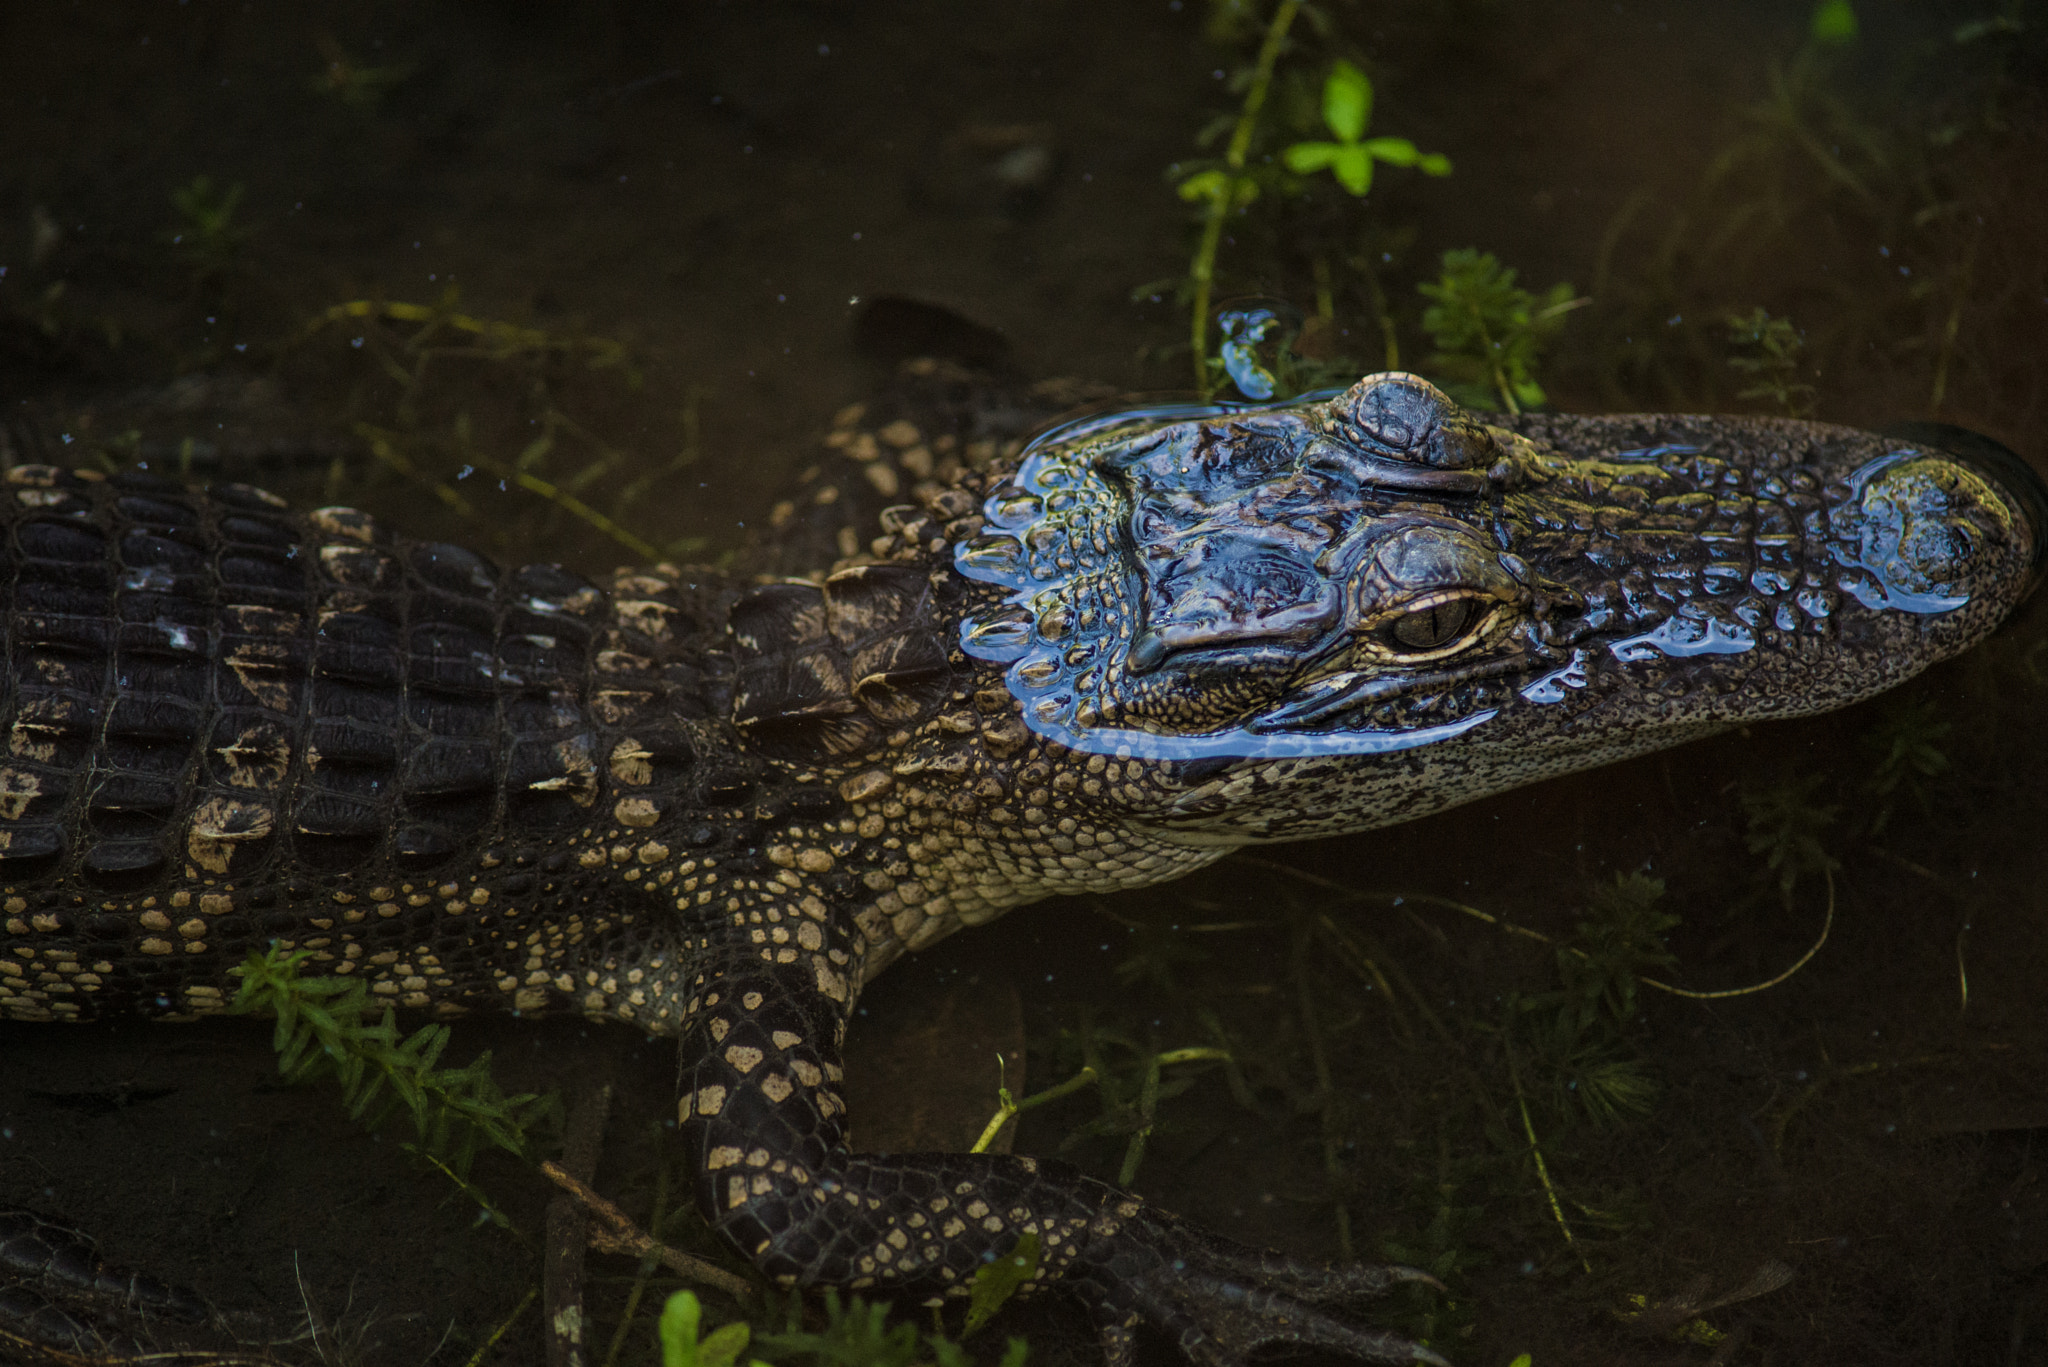 Nikon D610 + AF Nikkor 300mm f/4 IF-ED sample photo. Young alligator photography